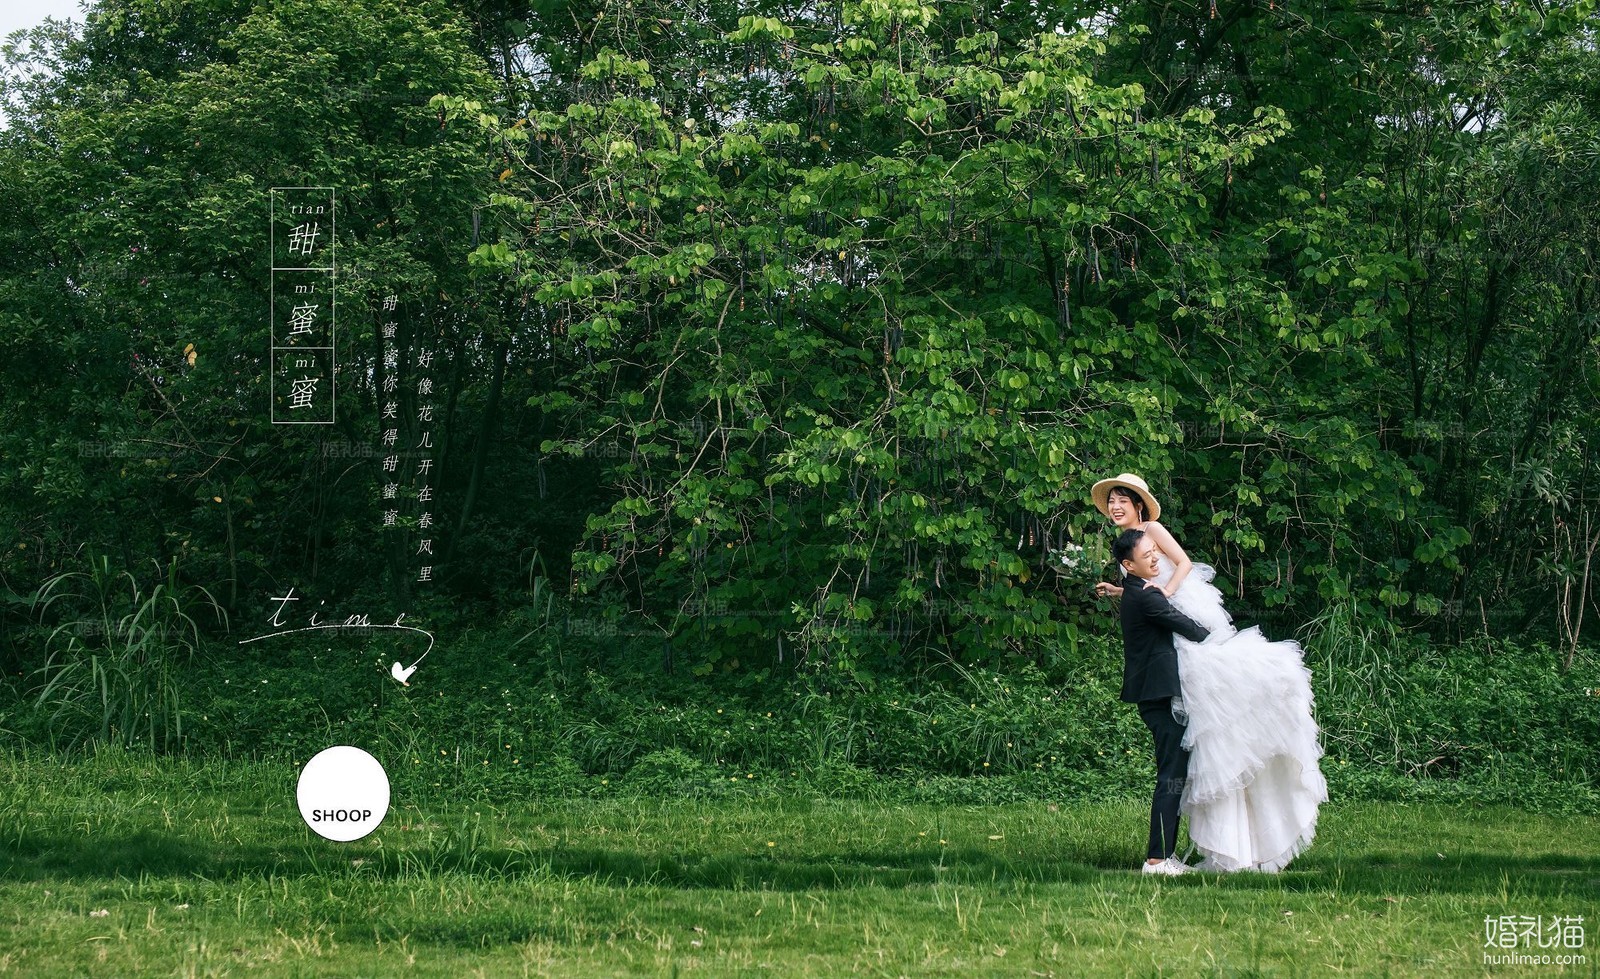 2019年7月广州结婚照,,广州婚纱照,婚纱照图片